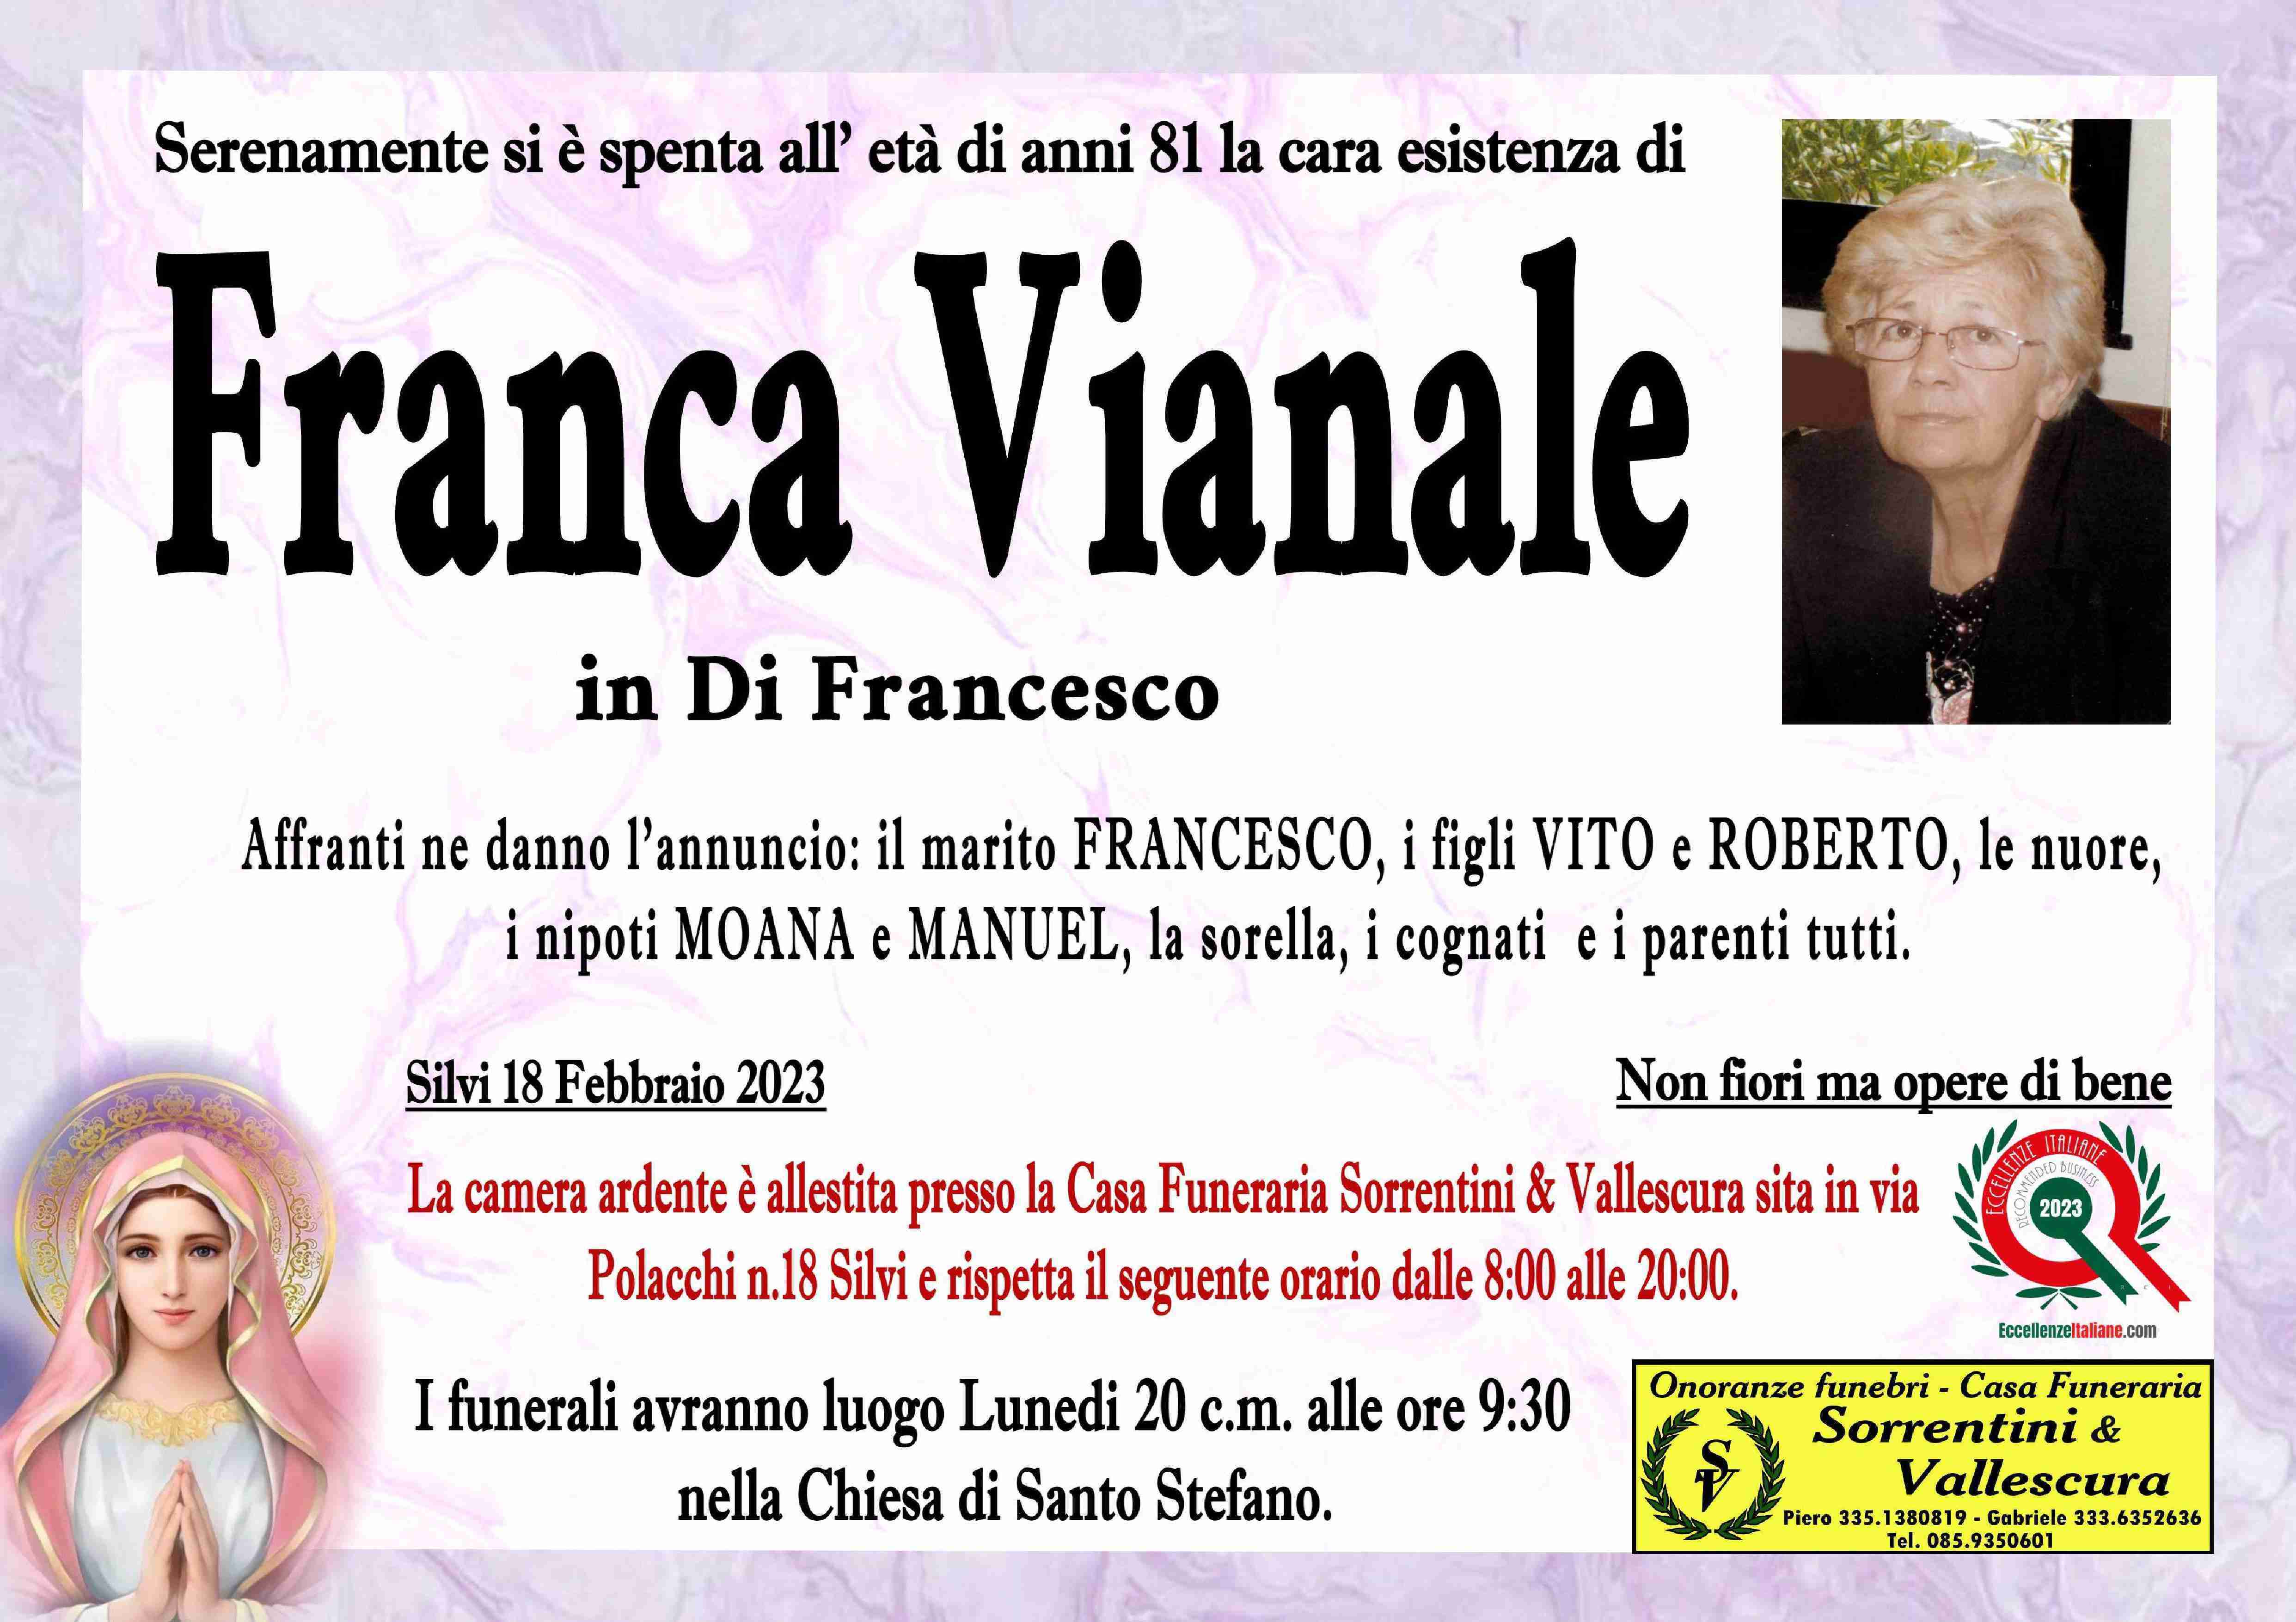 Franca Vianale